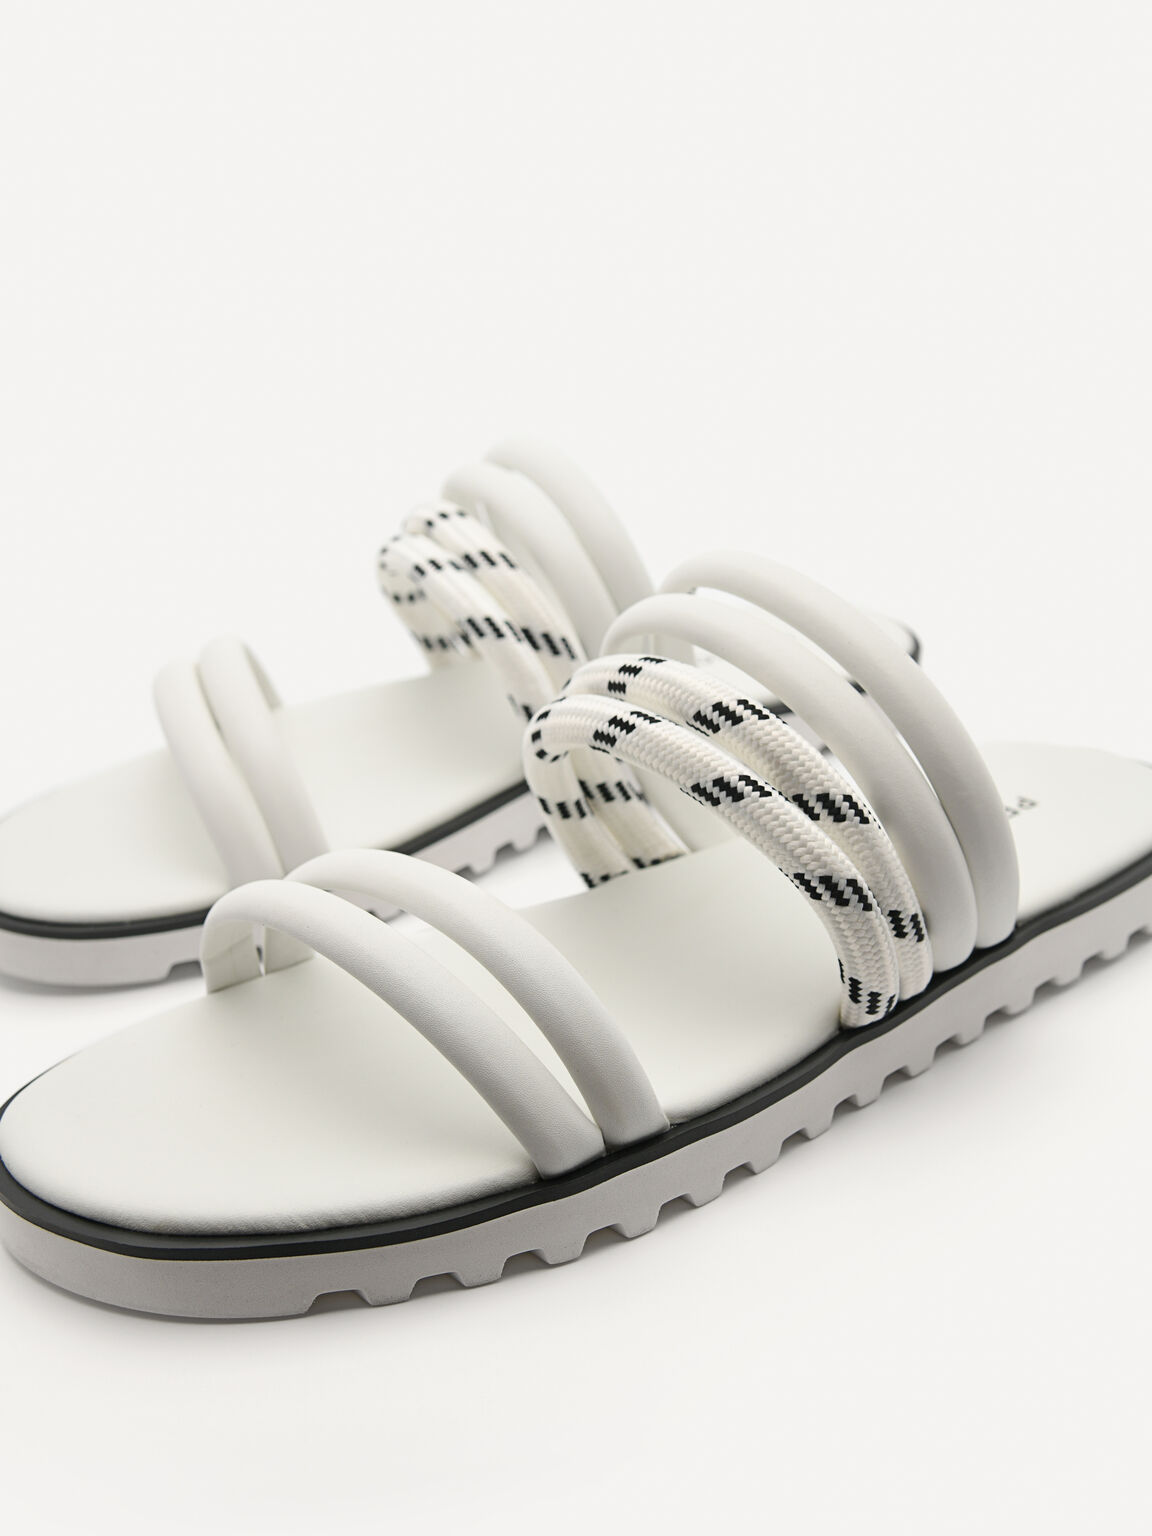 Cord Slide Sandals, White